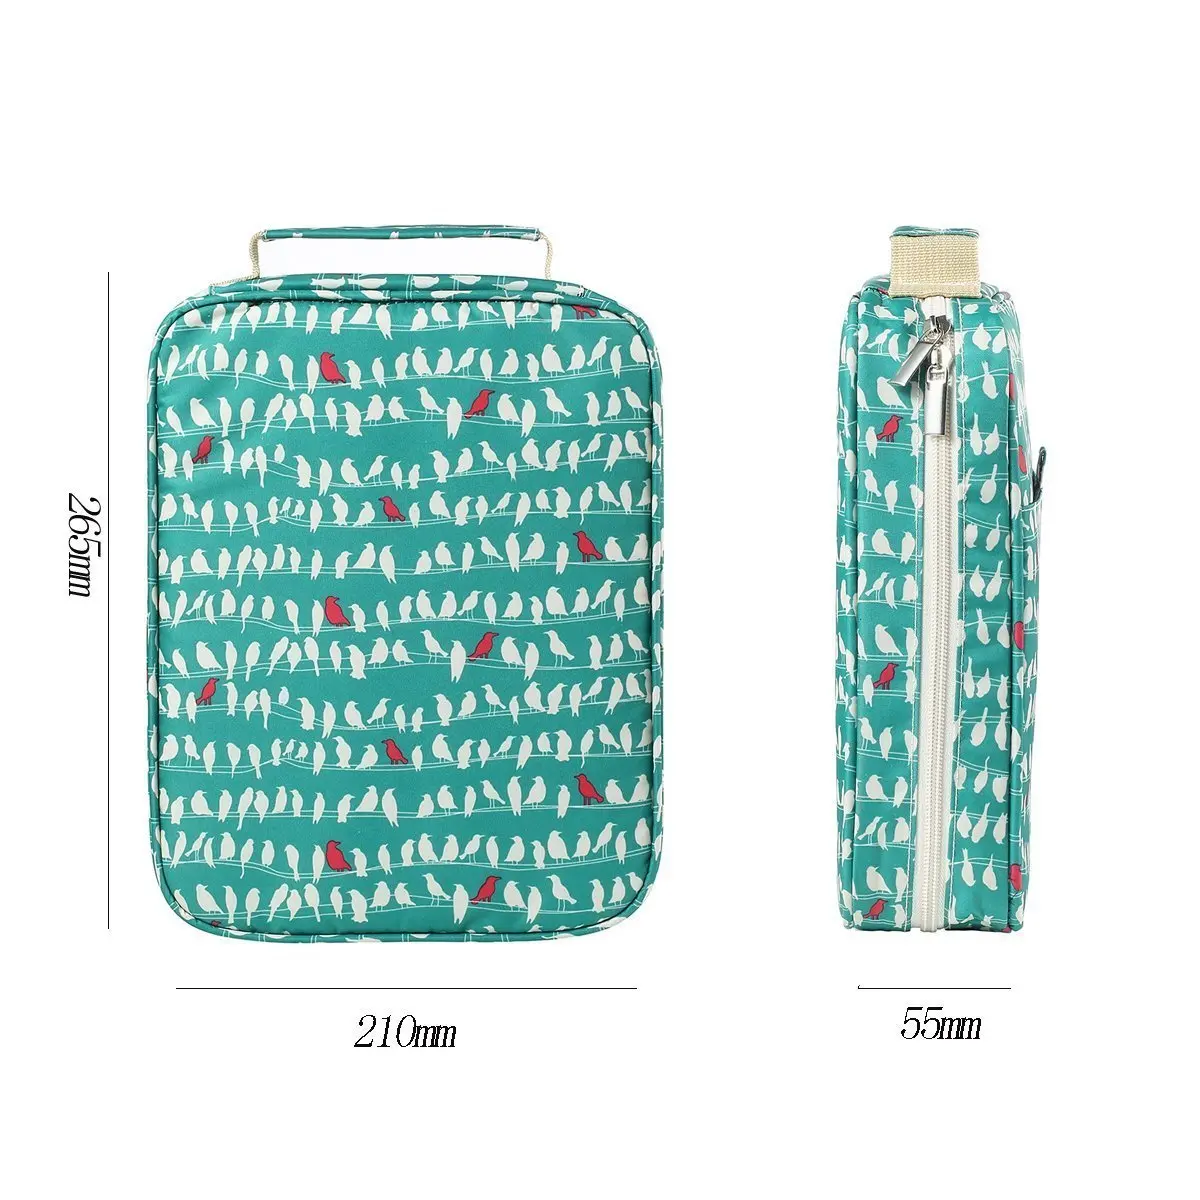 Kawaii 150 слотов пенал держатель 4 слоя молнии сумка с принтом большой емкости хранения пеналы школьные принадлежности